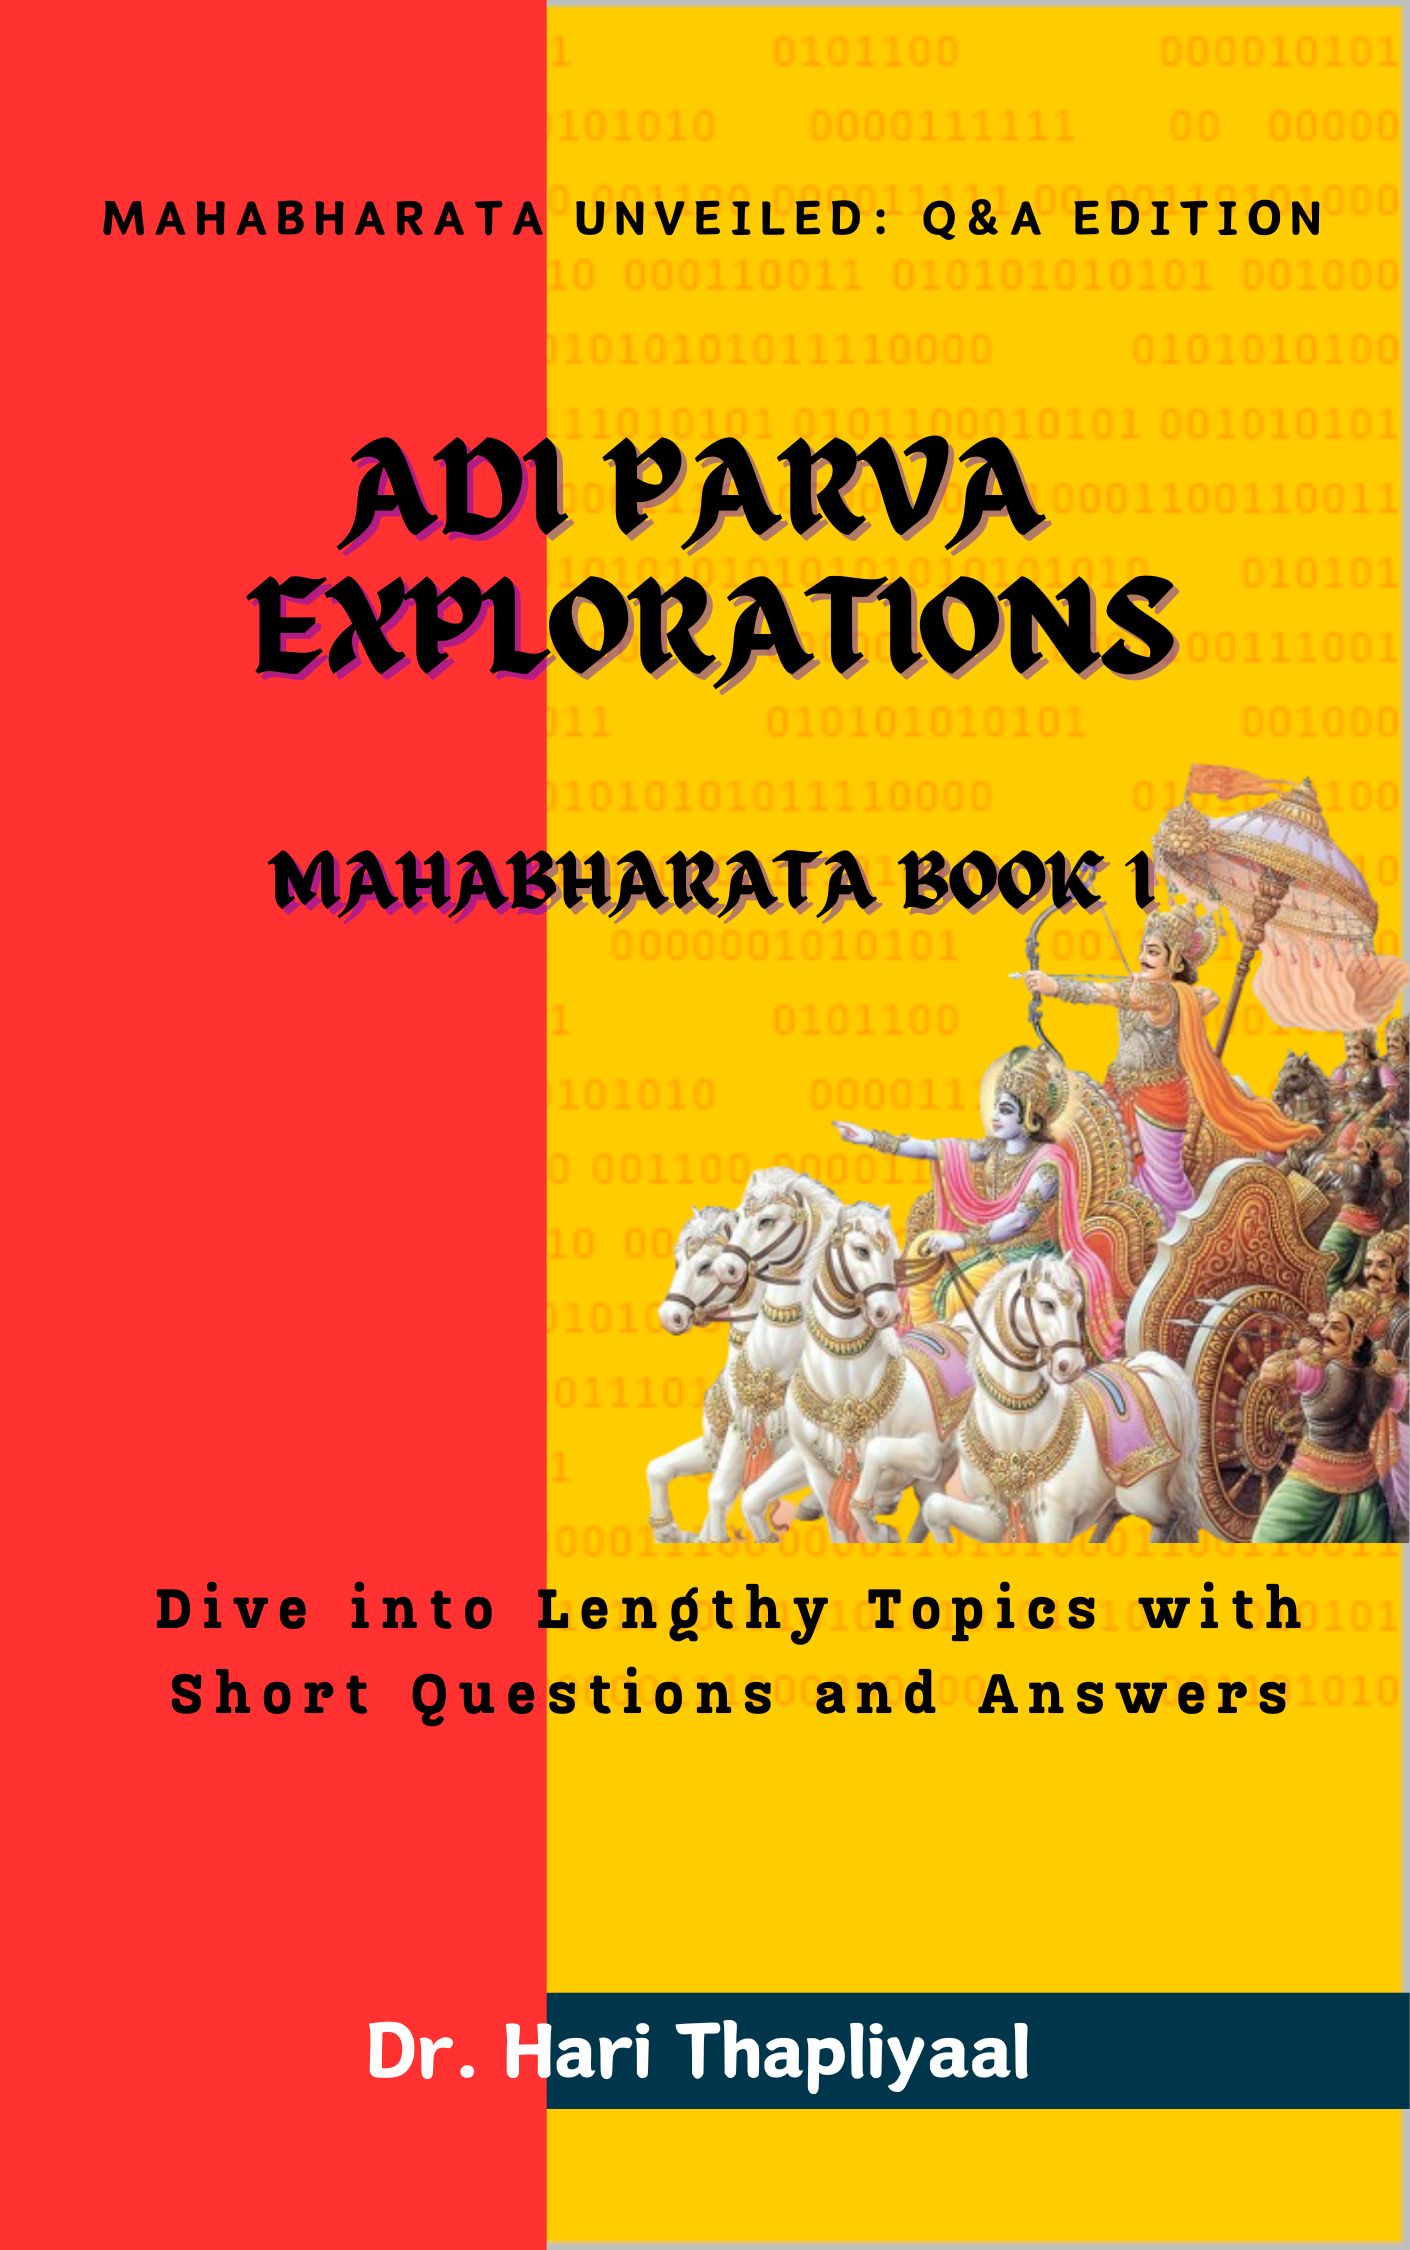 Book: Adi Parva Explorations : Mahabharata Book 1